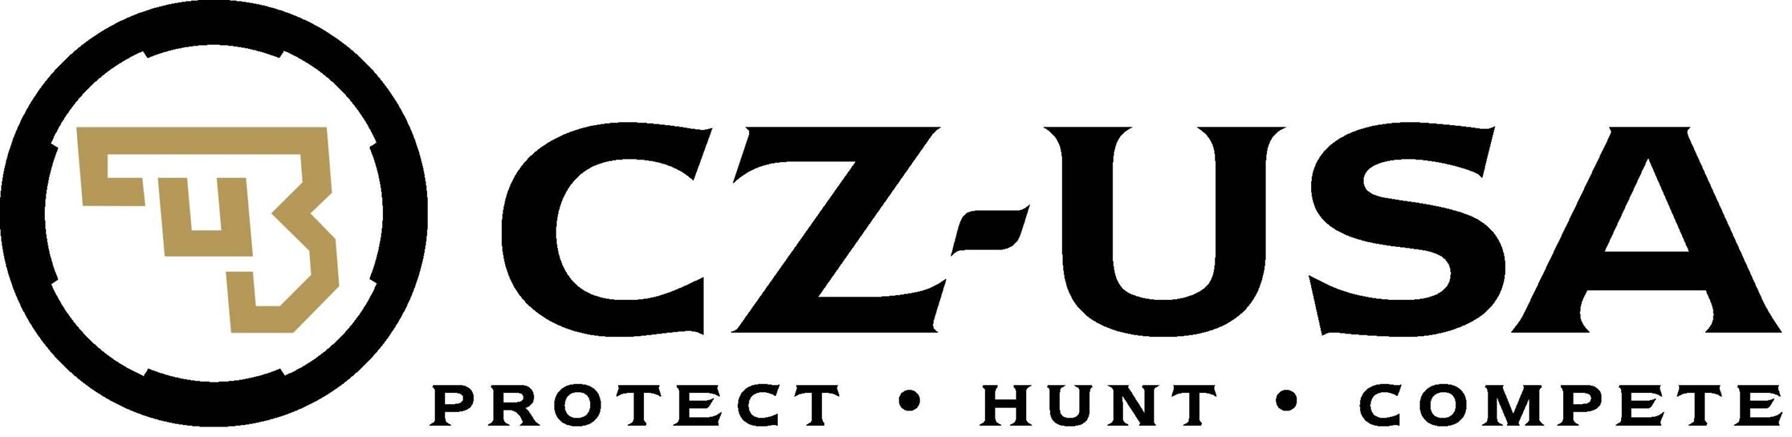 Z2Z 1